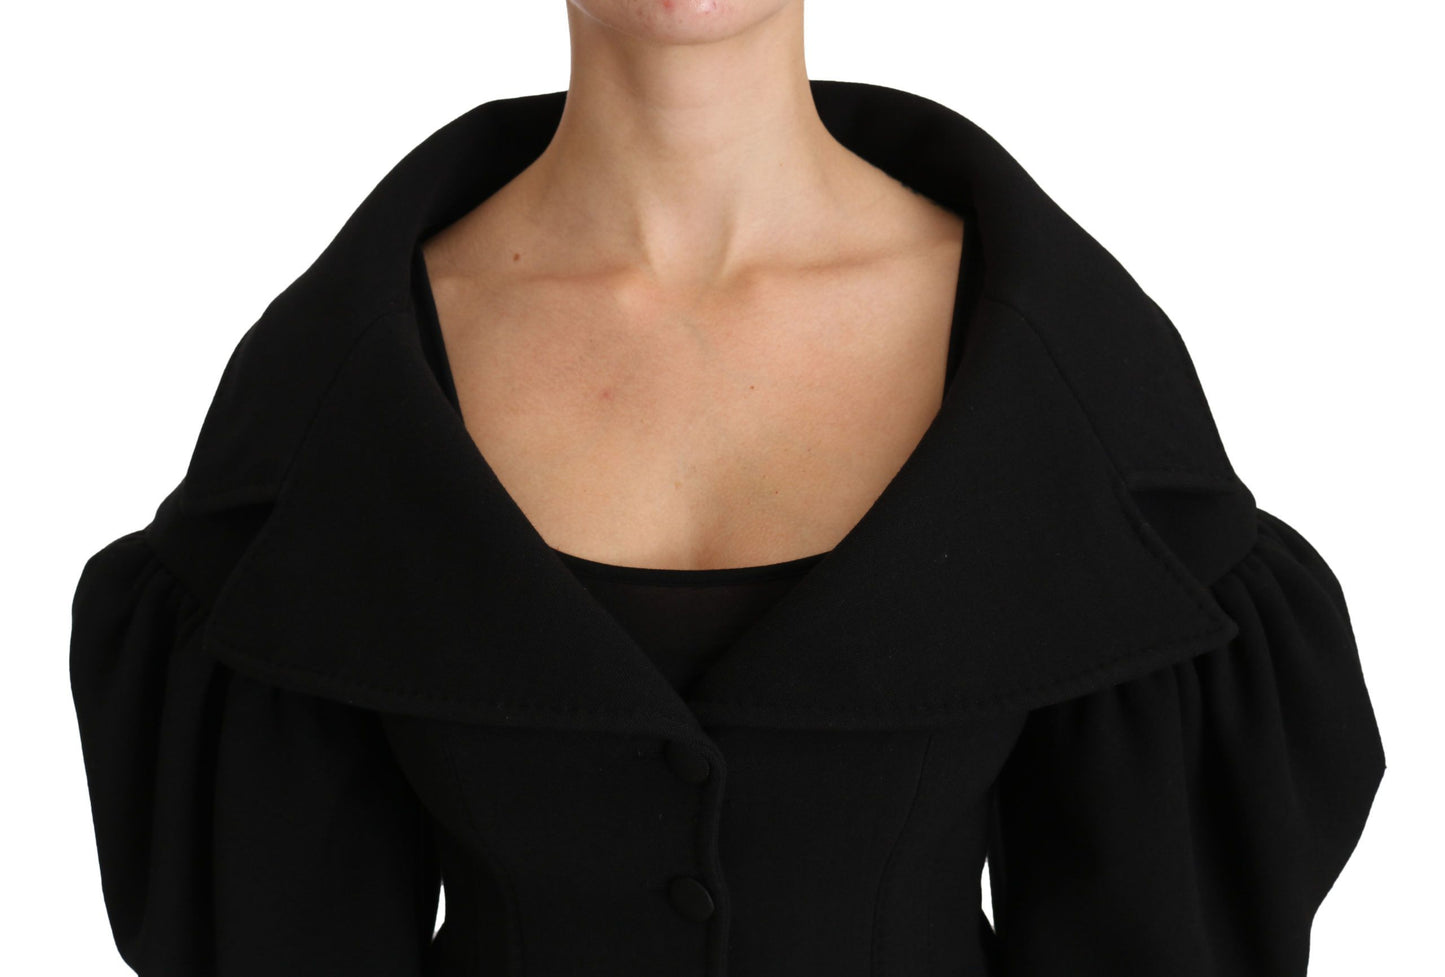 Elegant Black Virgin Wool Coat